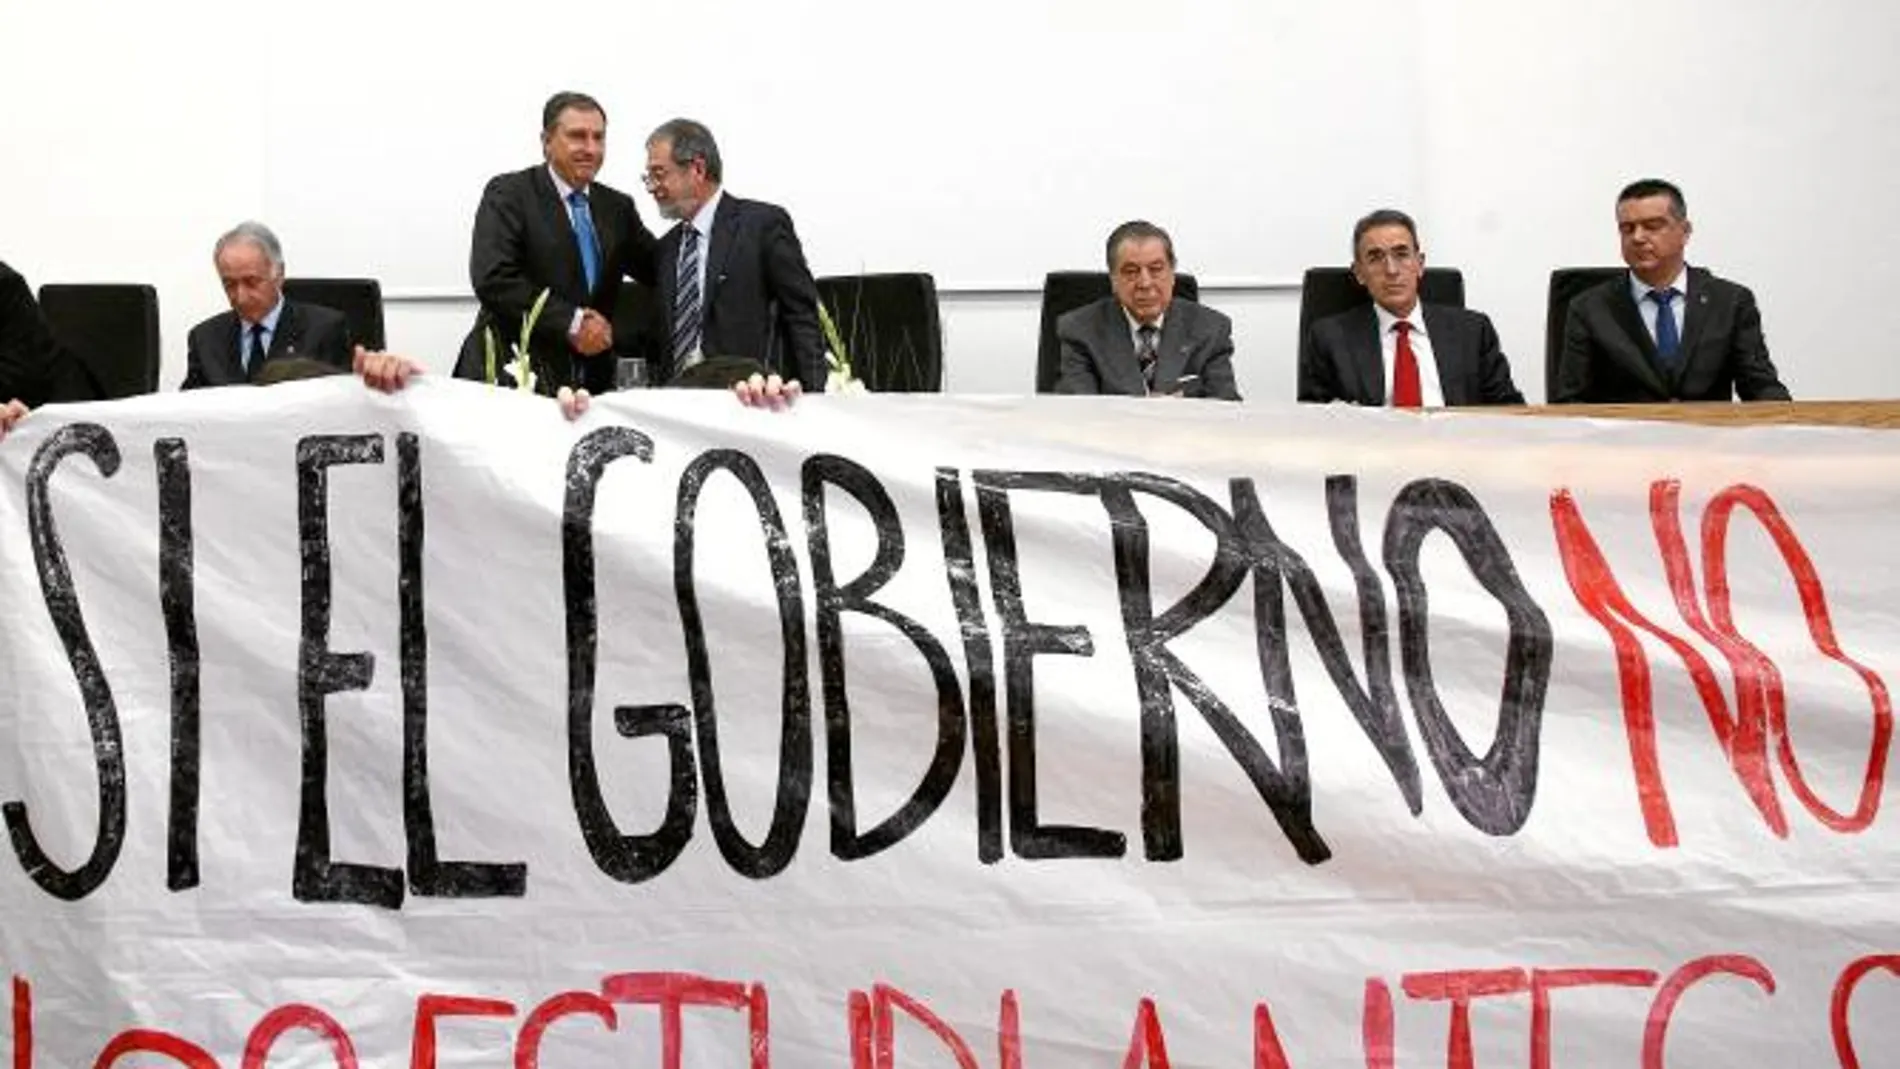 Momento en el que el rector Marcos Sacristán, en la imagen dando la mano al consejero Juan José Mateos, decide suspender el acto